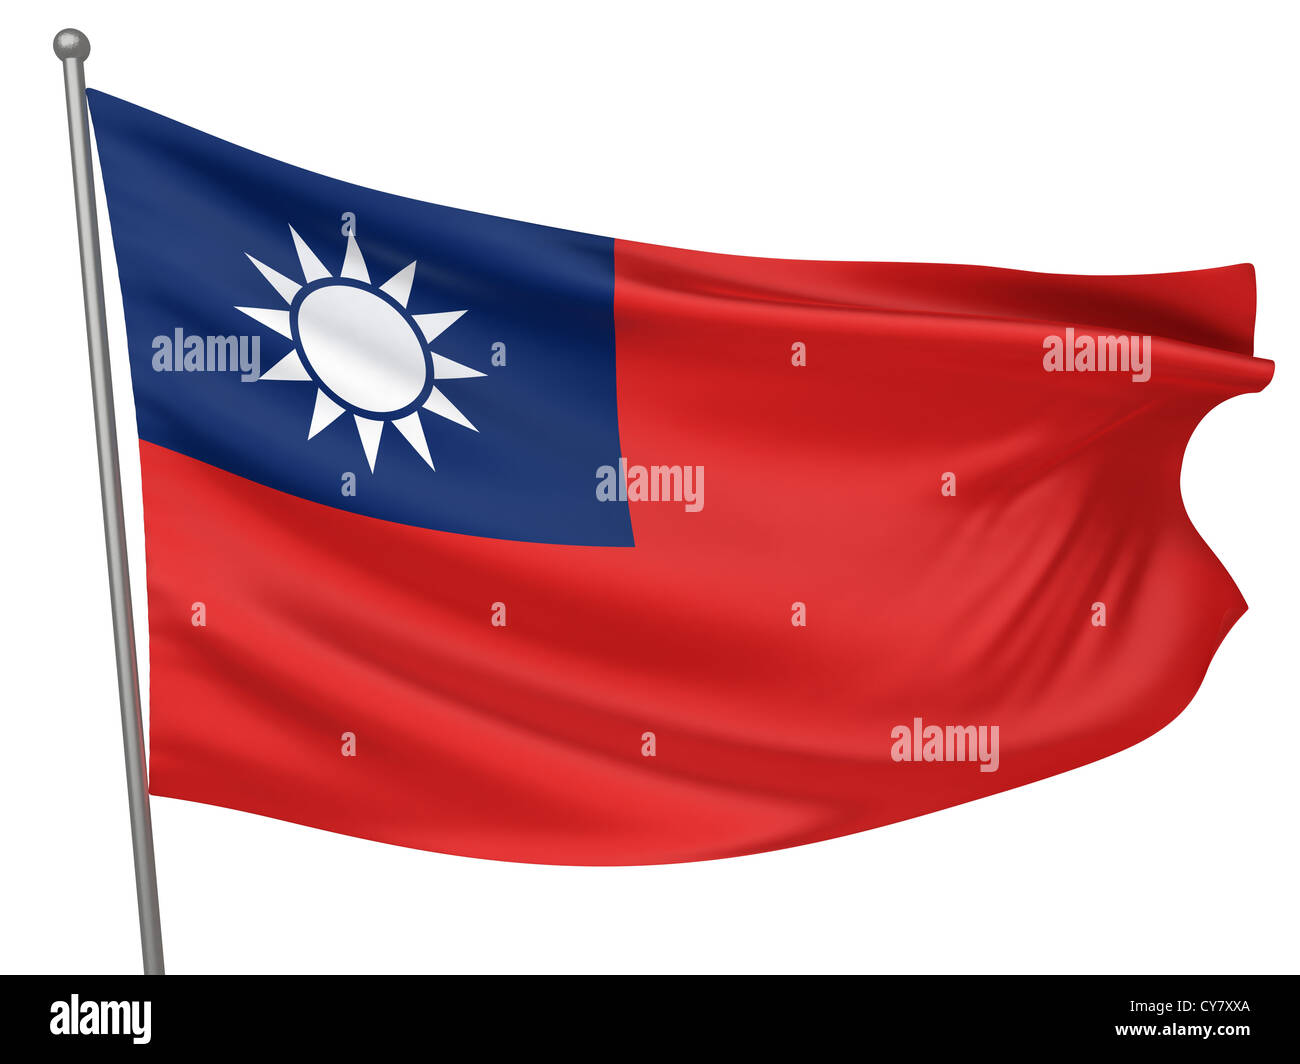 Taiwan bandiera nazionale - tutti i paesi - Collezione immagine isolata Foto Stock